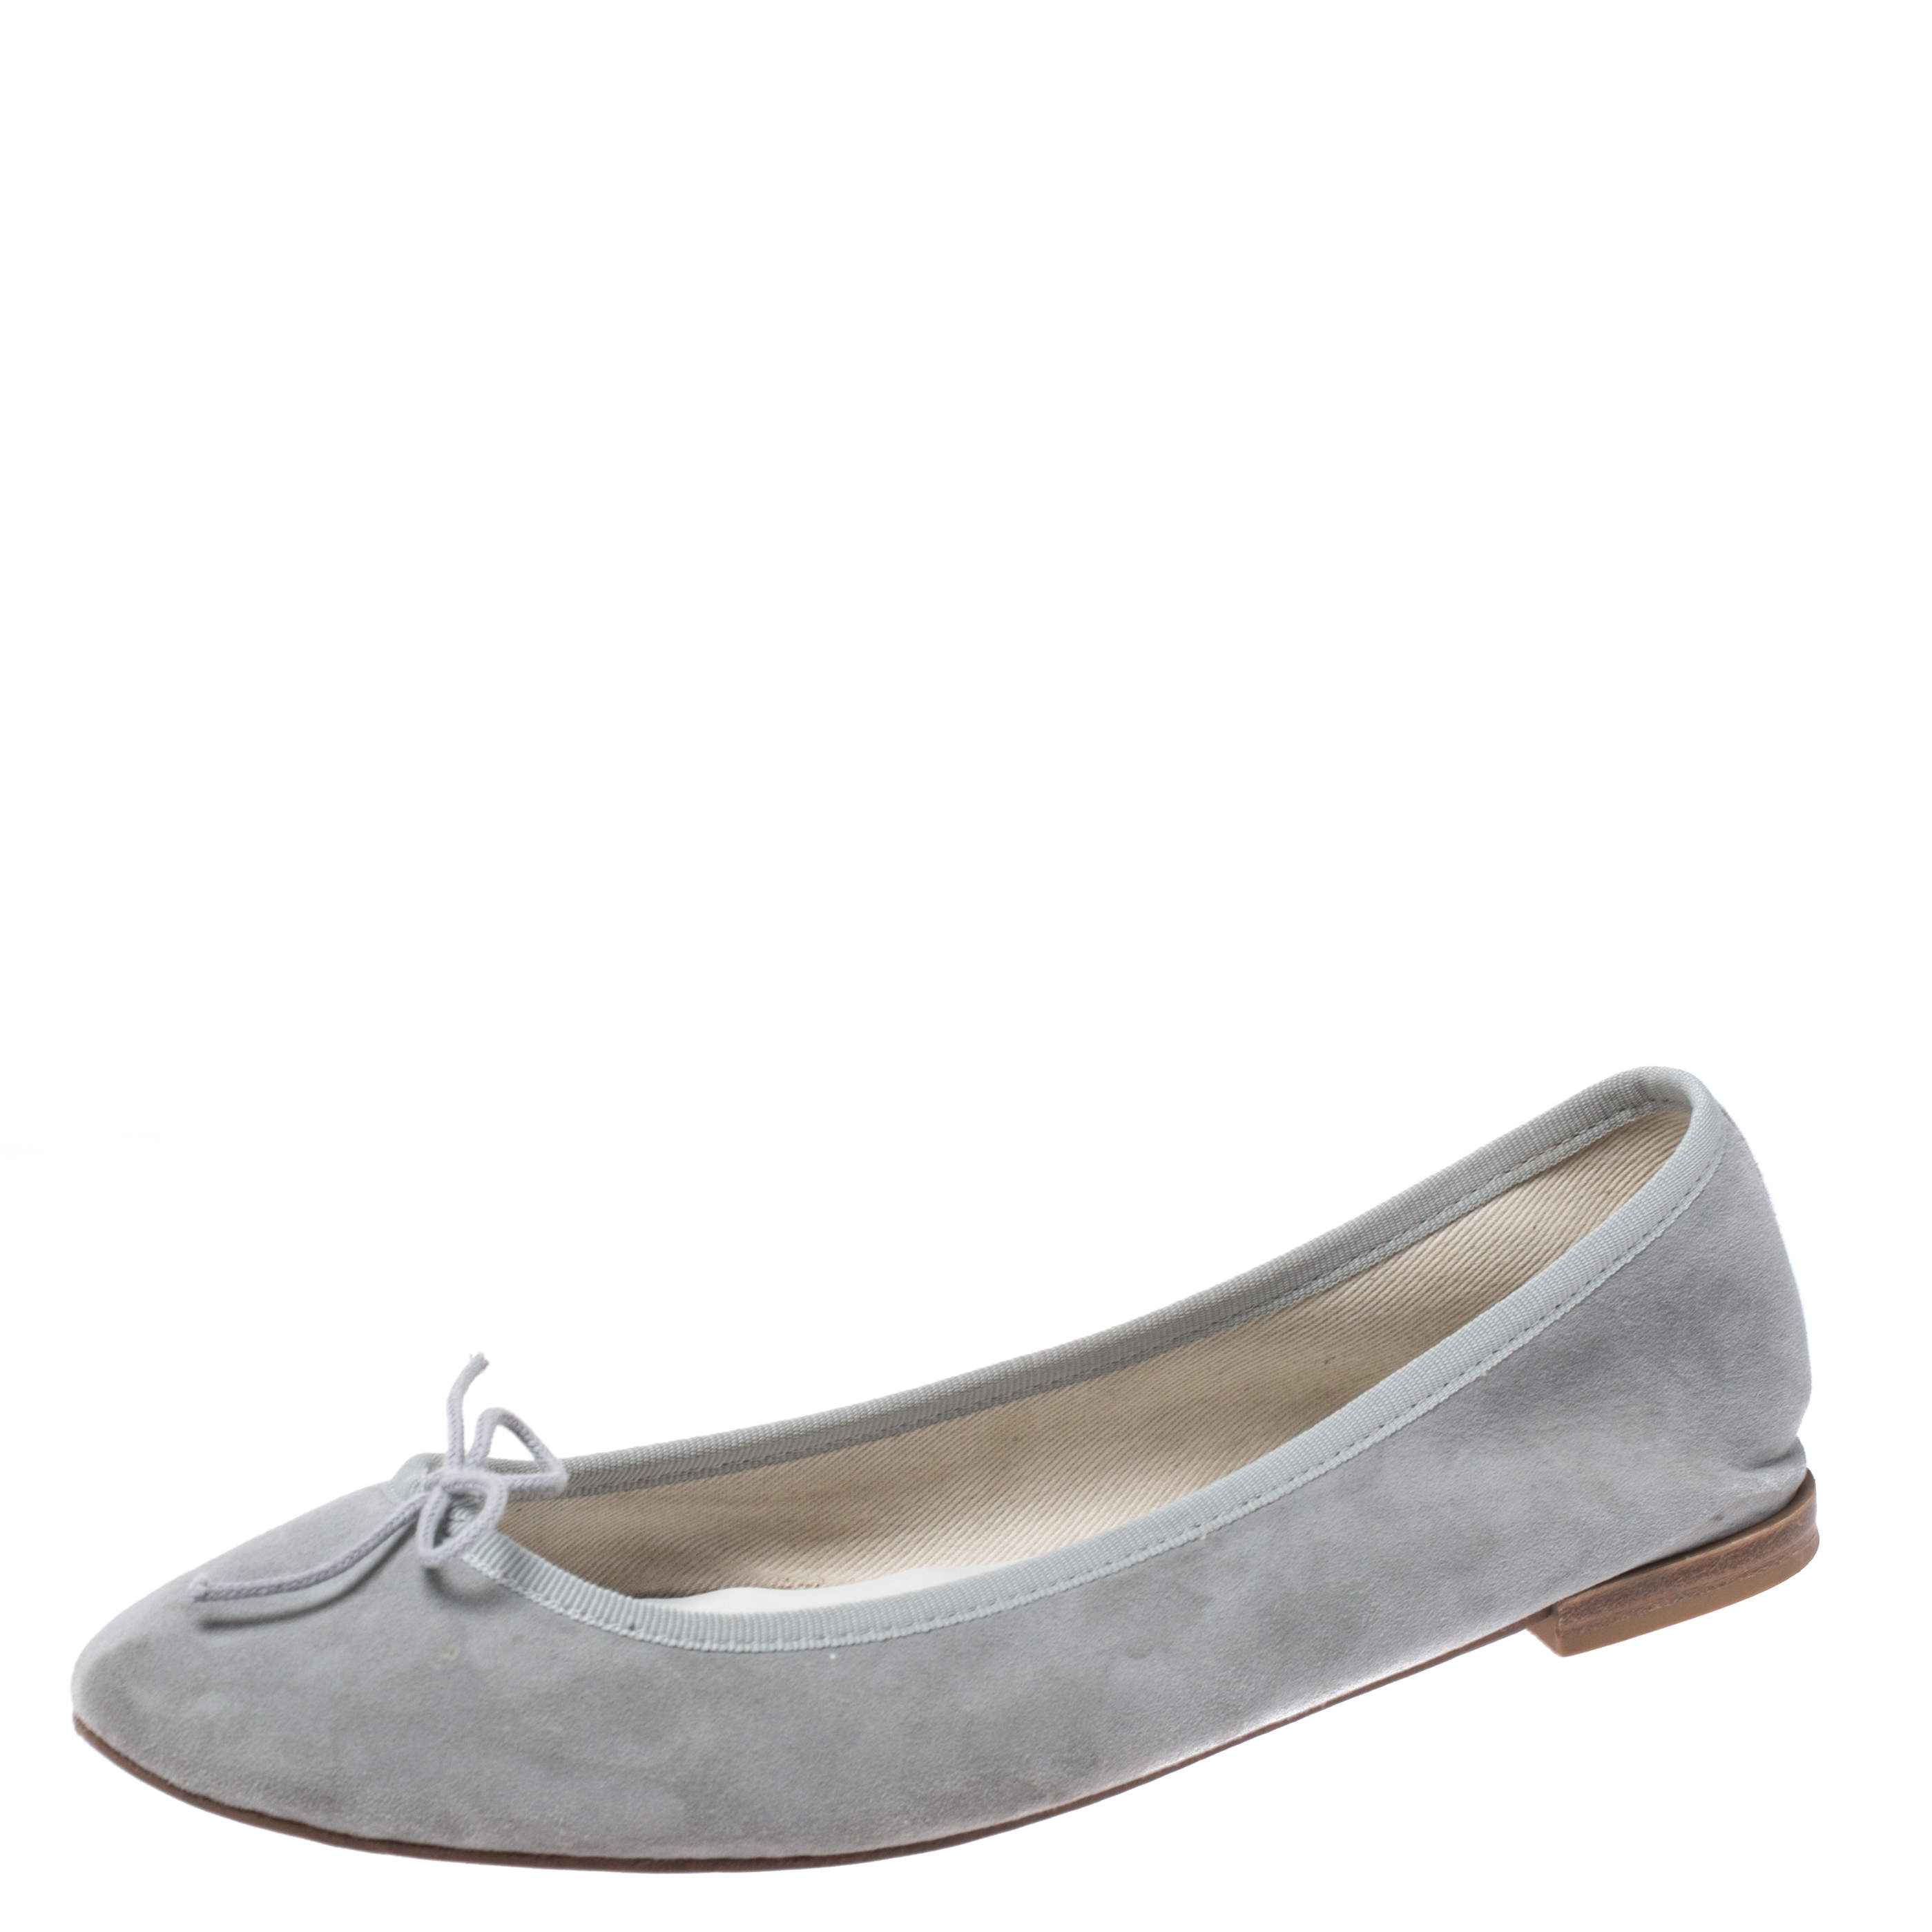 Repetto Grey Suede Leather Cendrillon Ballerina Flats Size 42